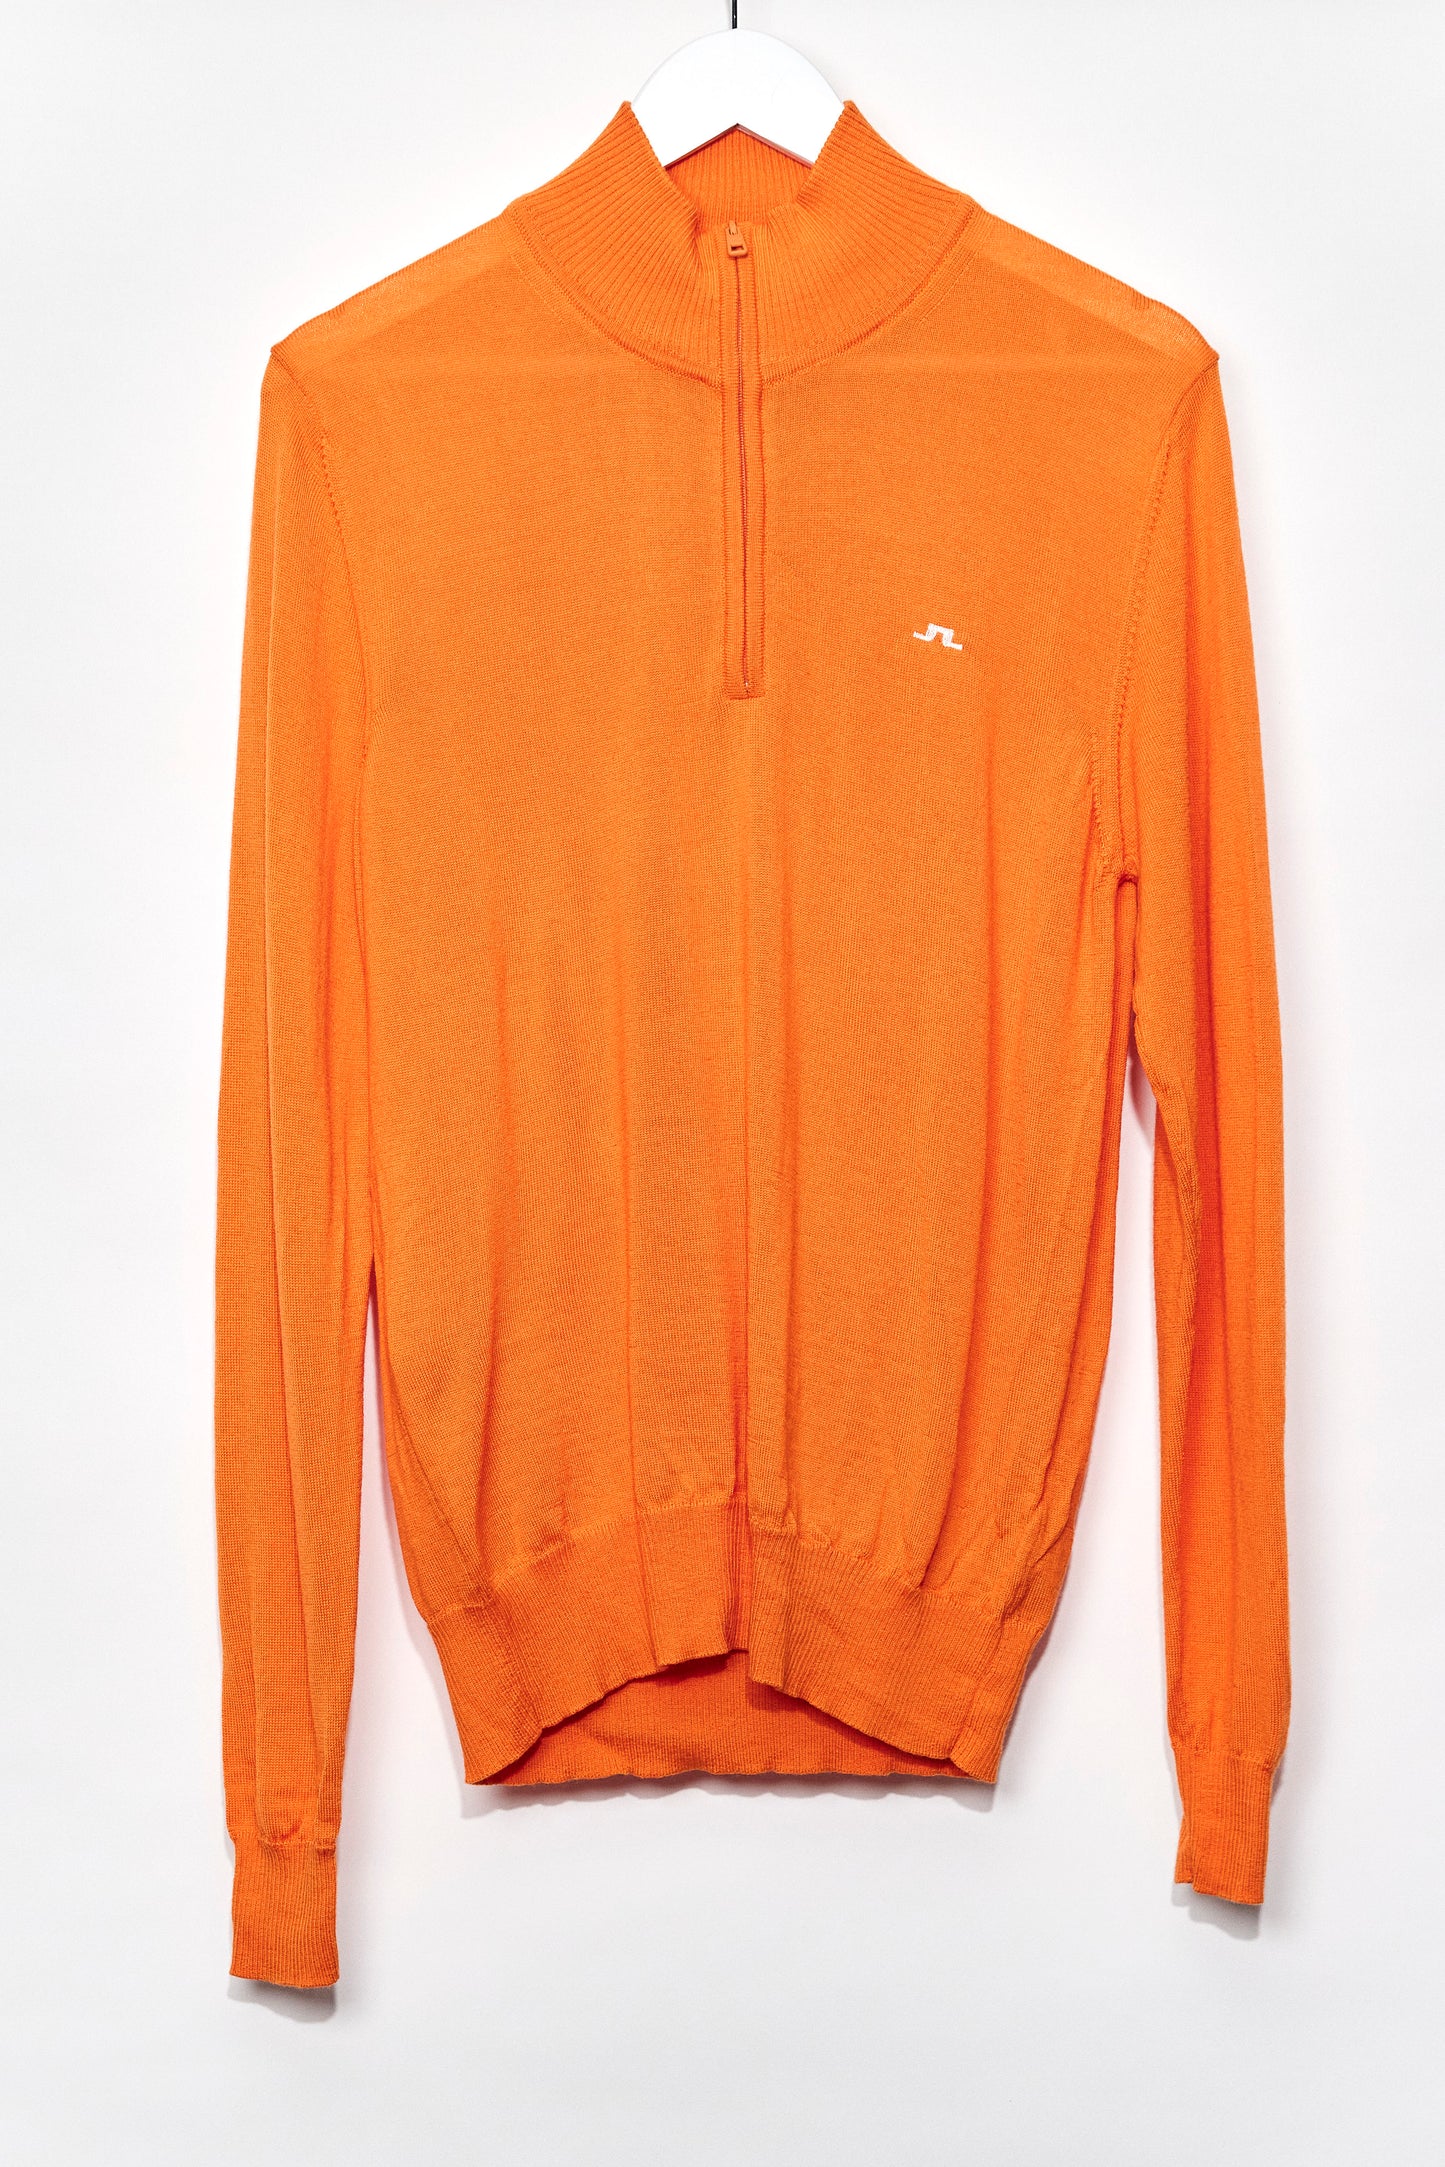 Mens Orange Knitted Golf Jumper with Zip Neck size Medium